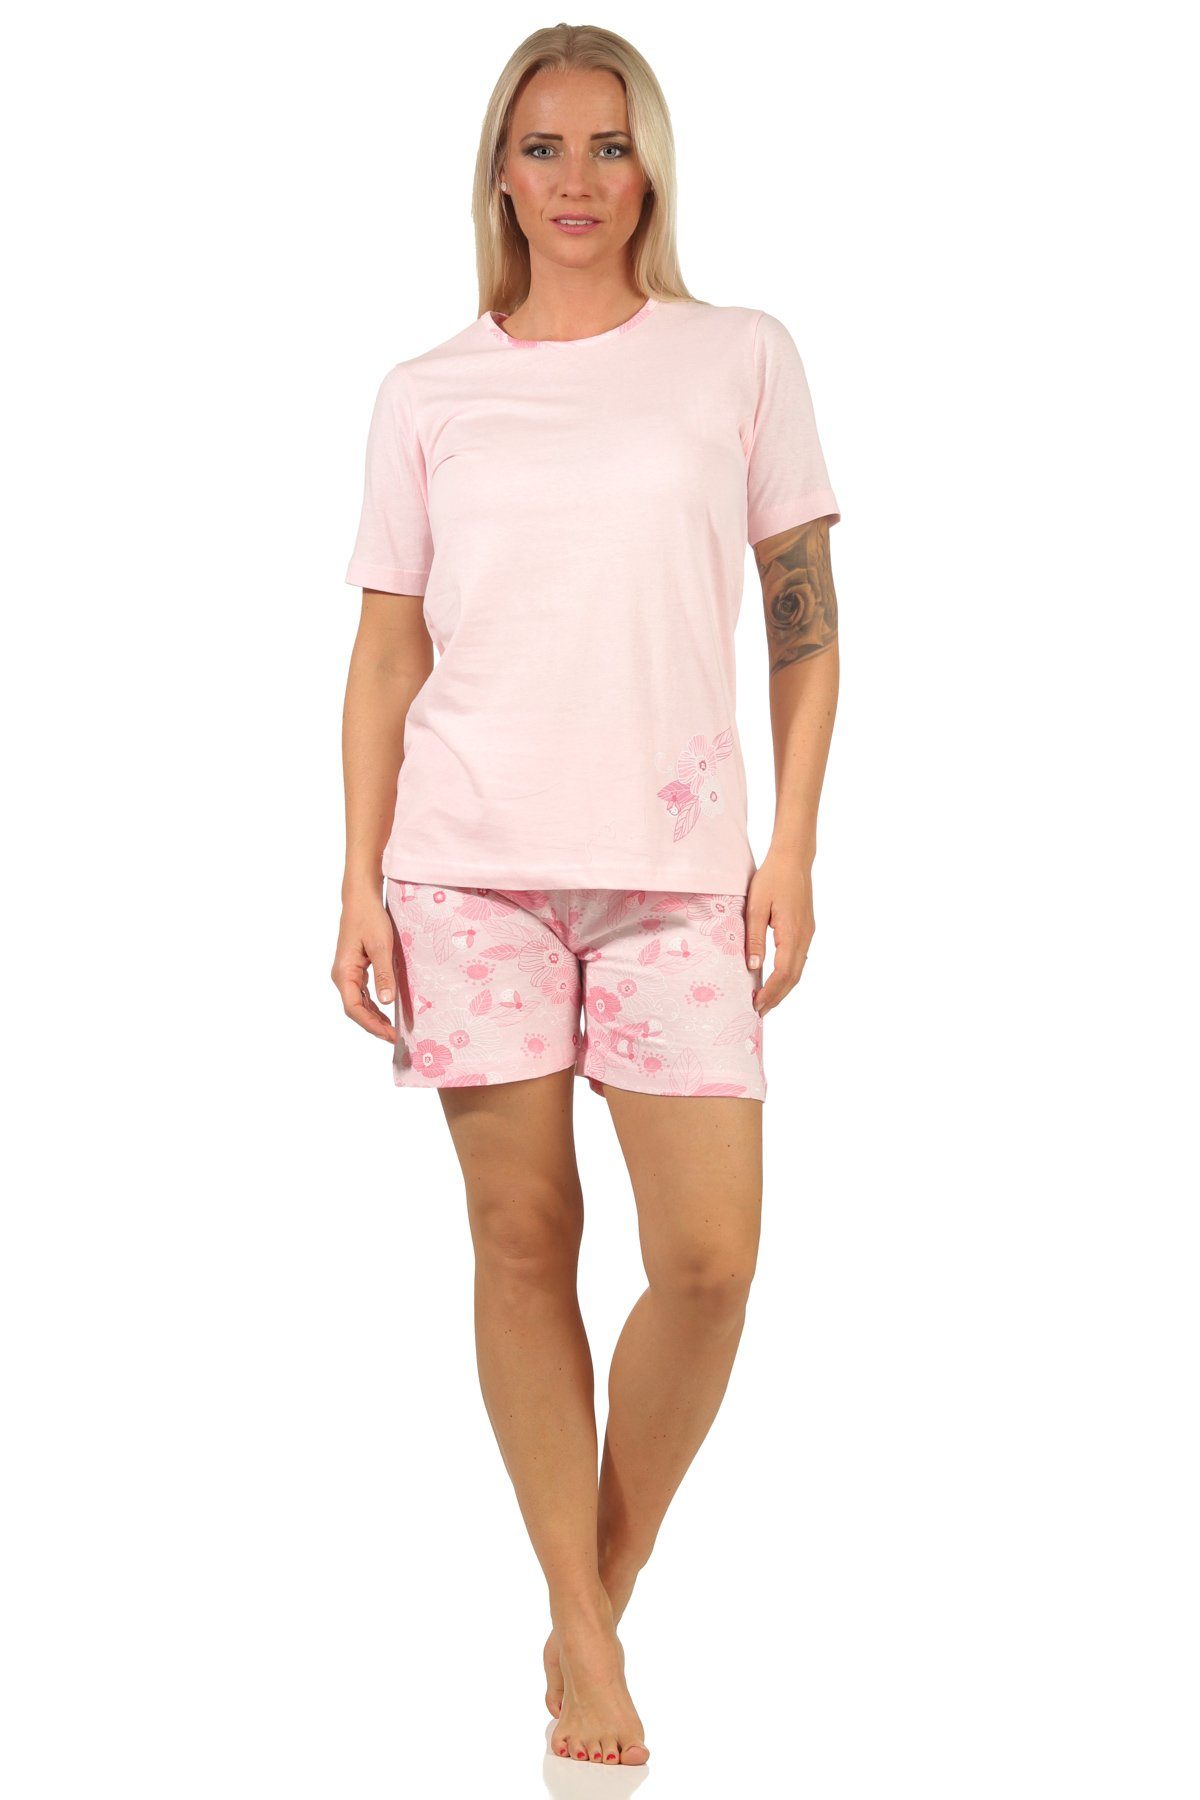 Normann RELAX Pyjama kurzarm, by rosa in Design Damen Pyjama Wunderschöner Shorty sommerlichem